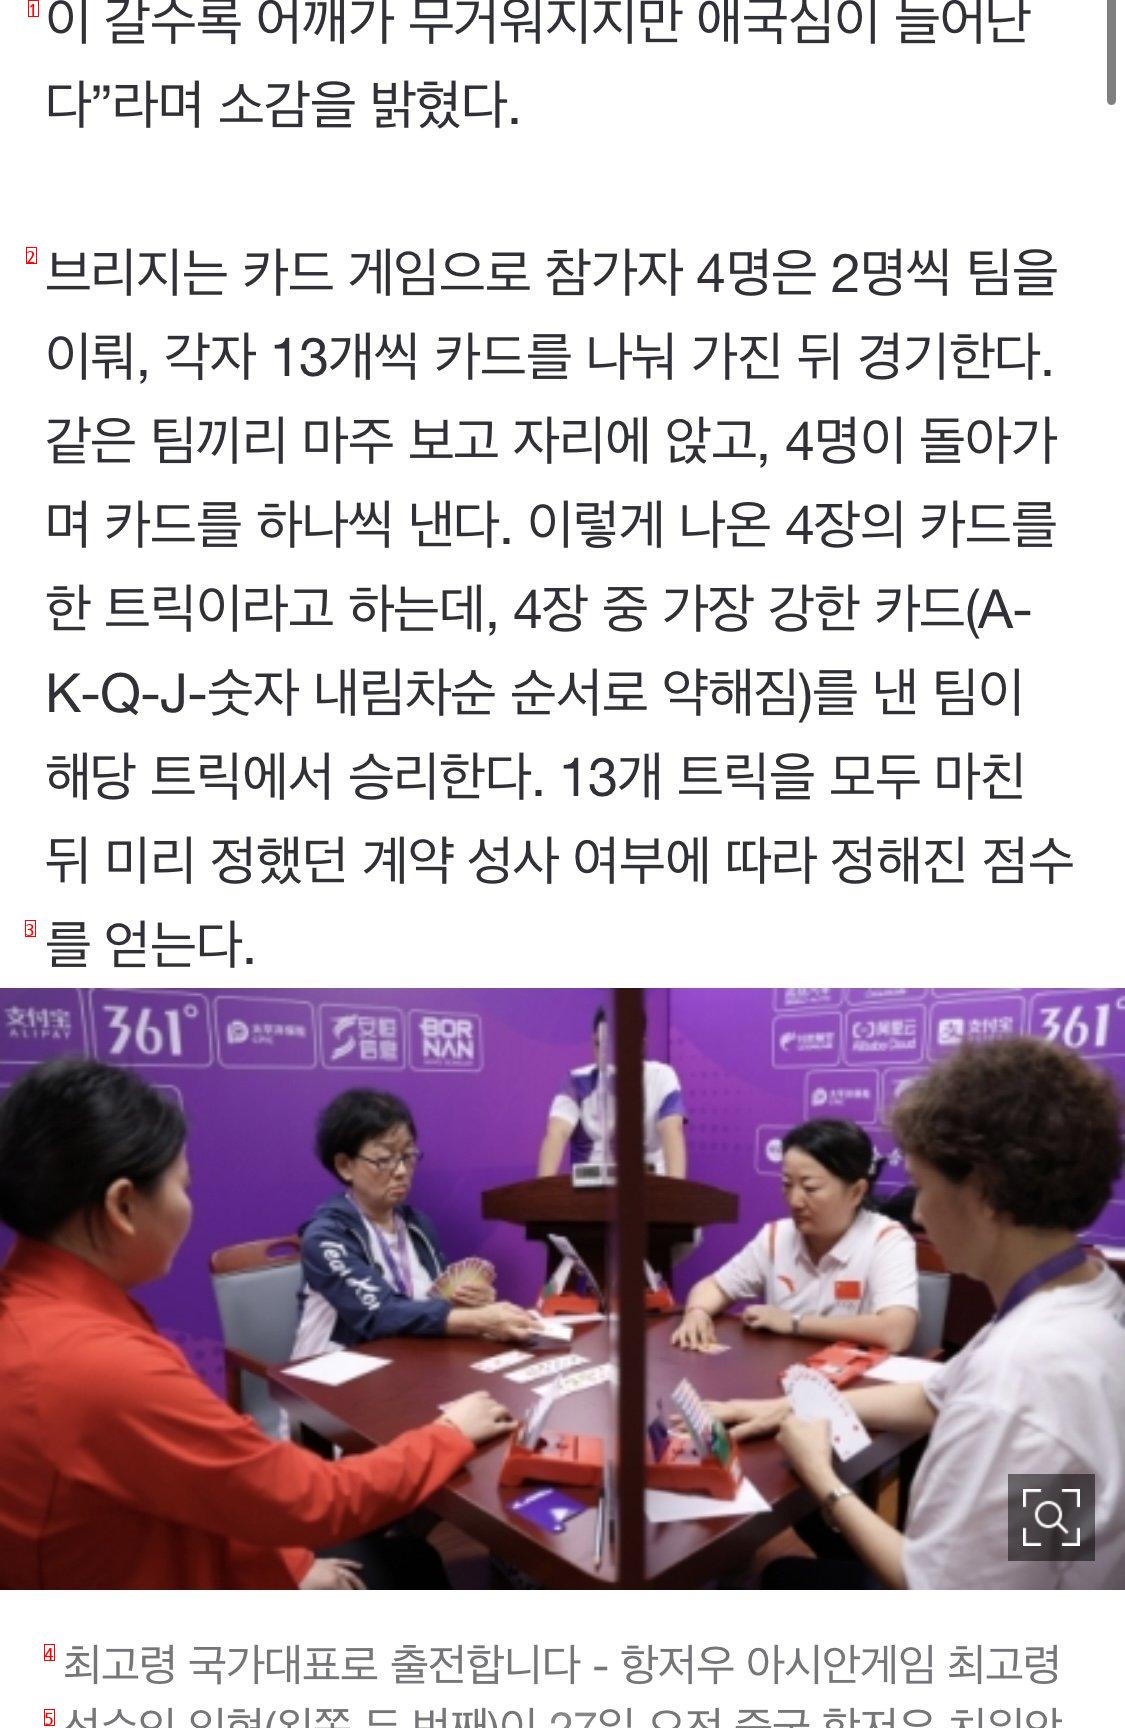 73살 최고령 국가대표 “아시안게임 출격”